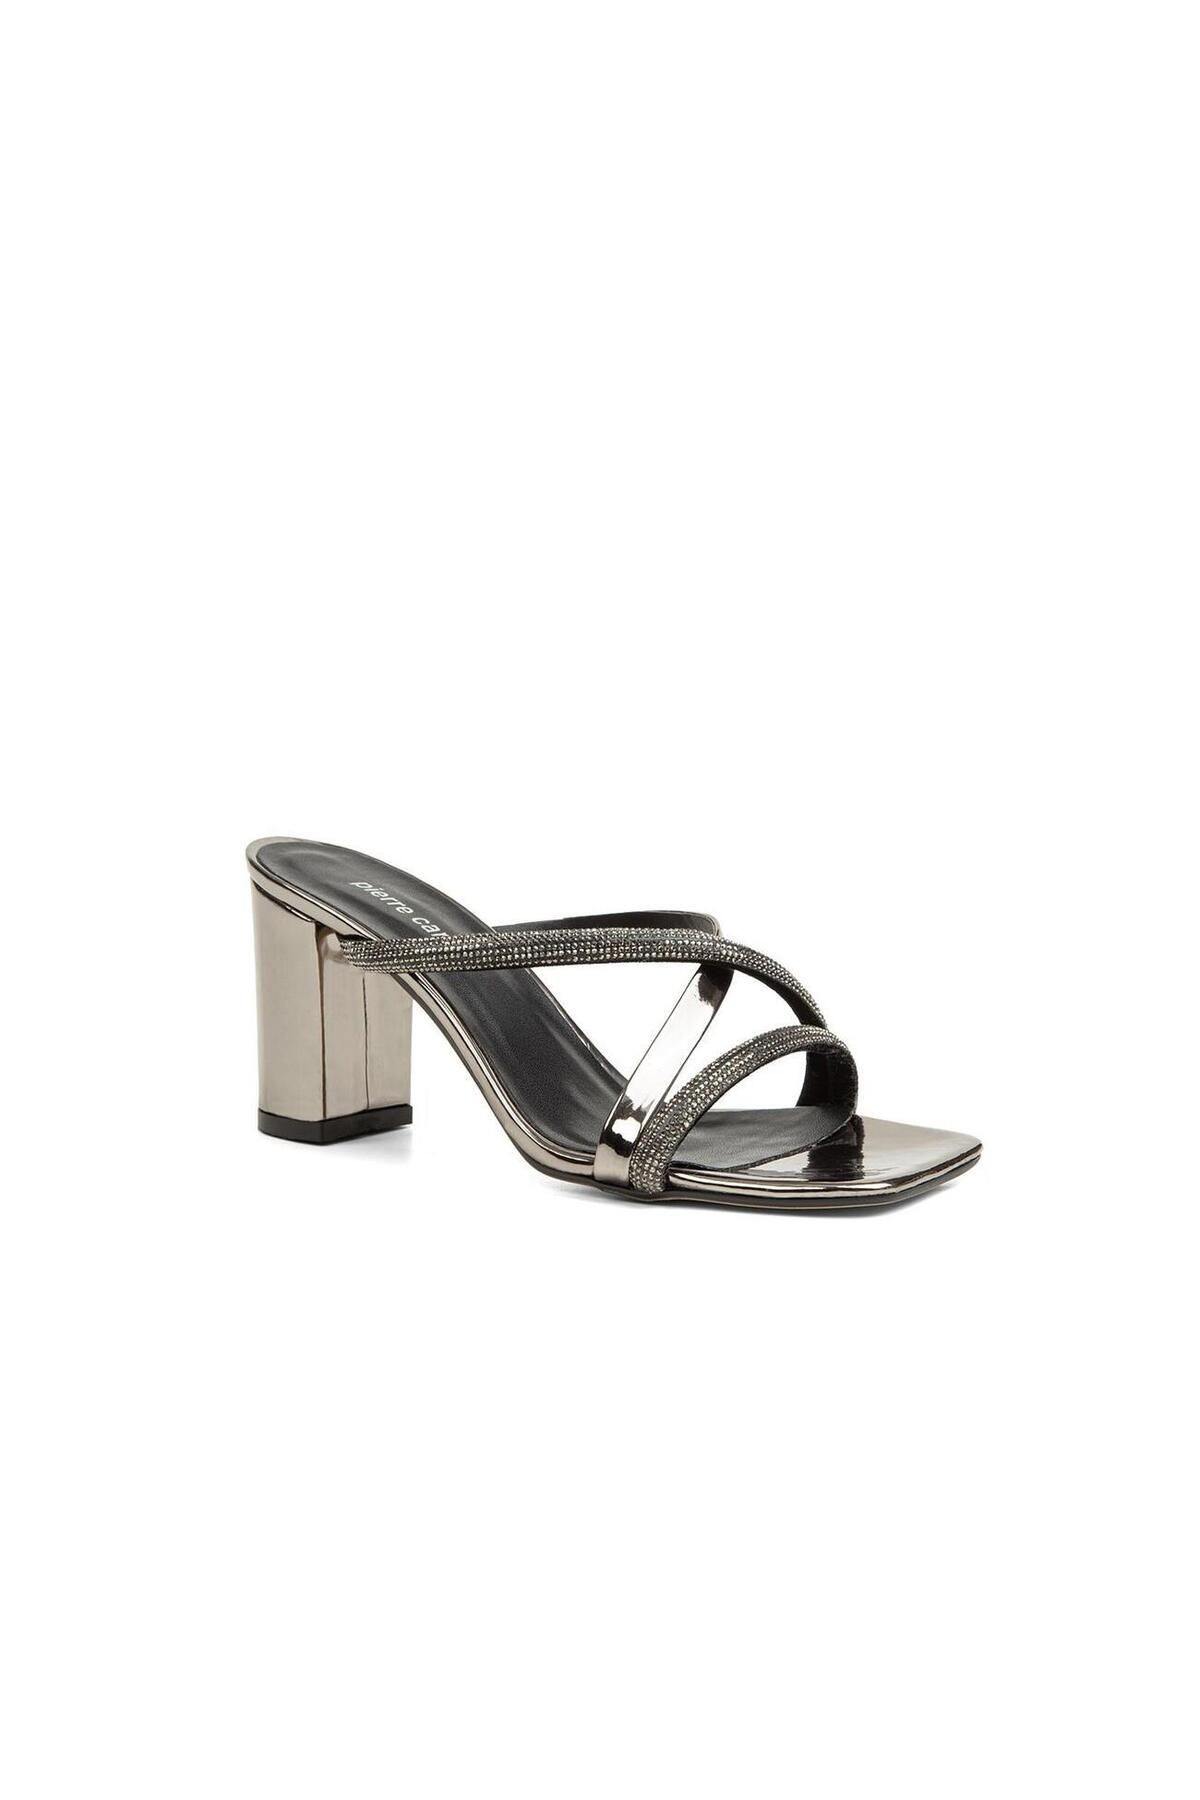 Pierre Cardin PC-52217 Gümüş Kadın Topuklu Ayakkabı